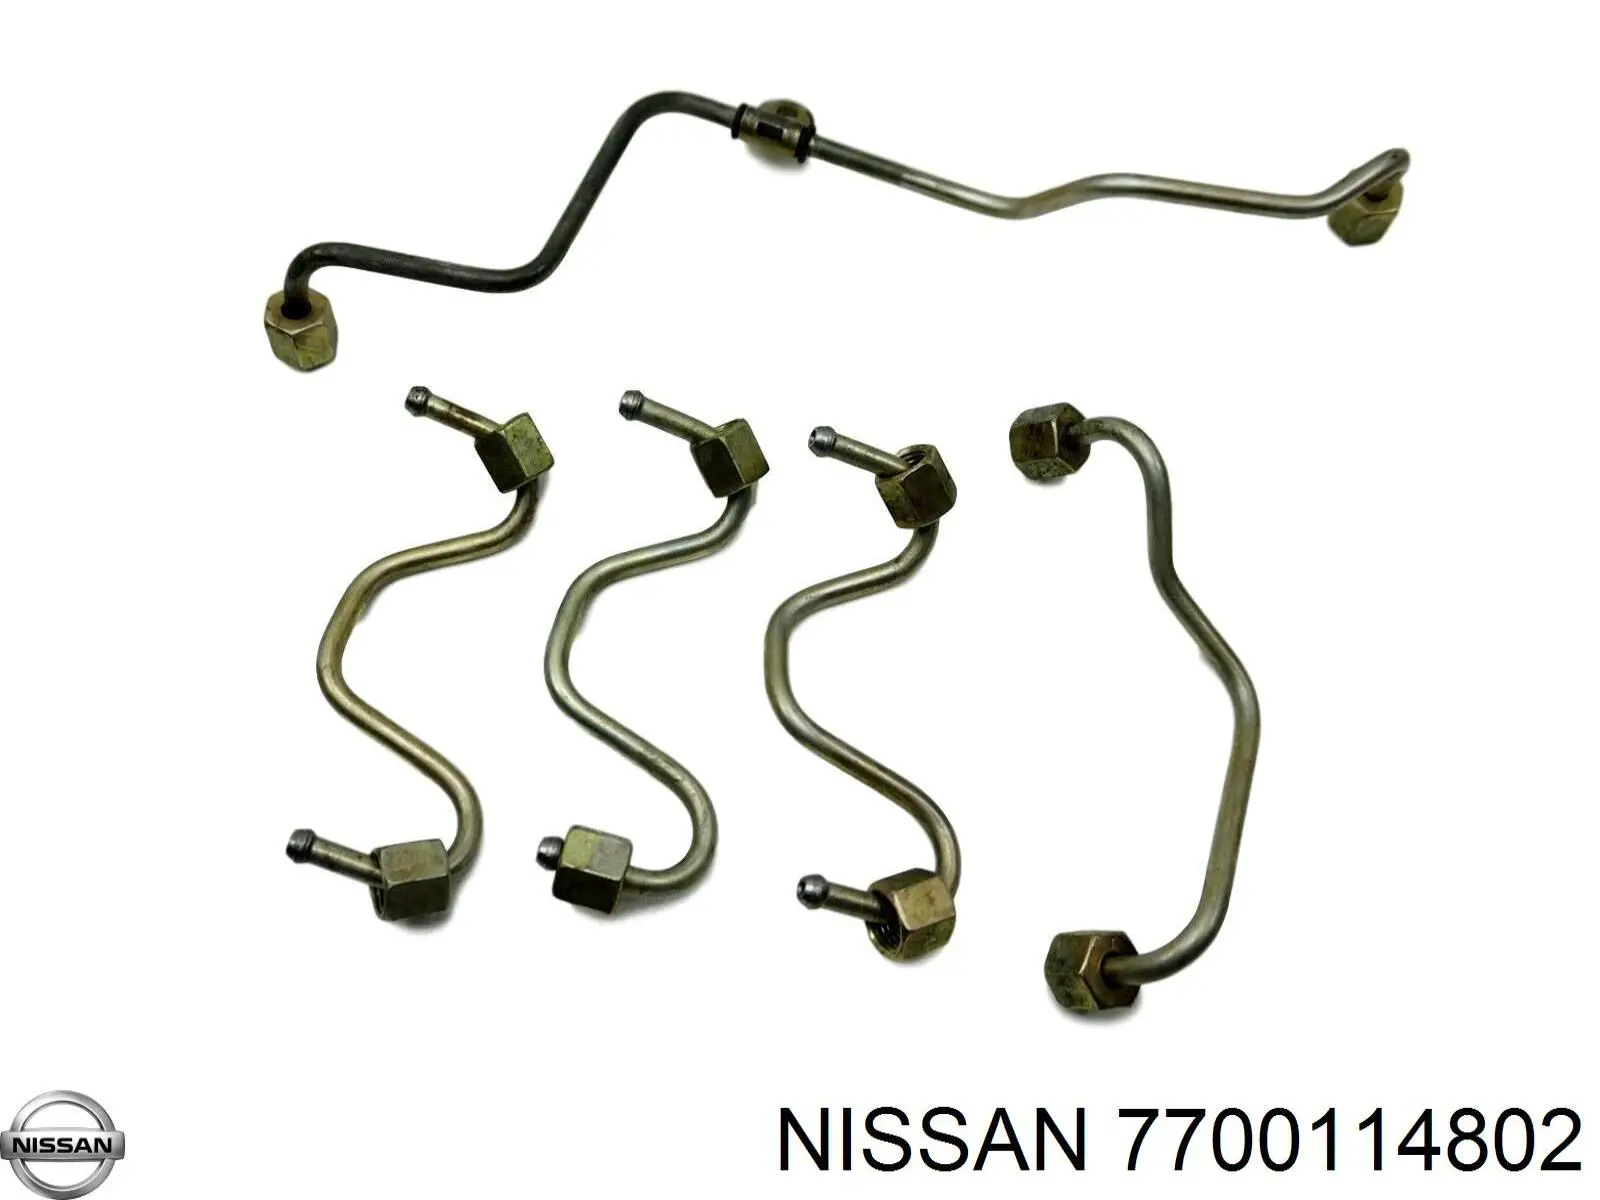 7700114802 Nissan tubo de combustible atras de las boquillas